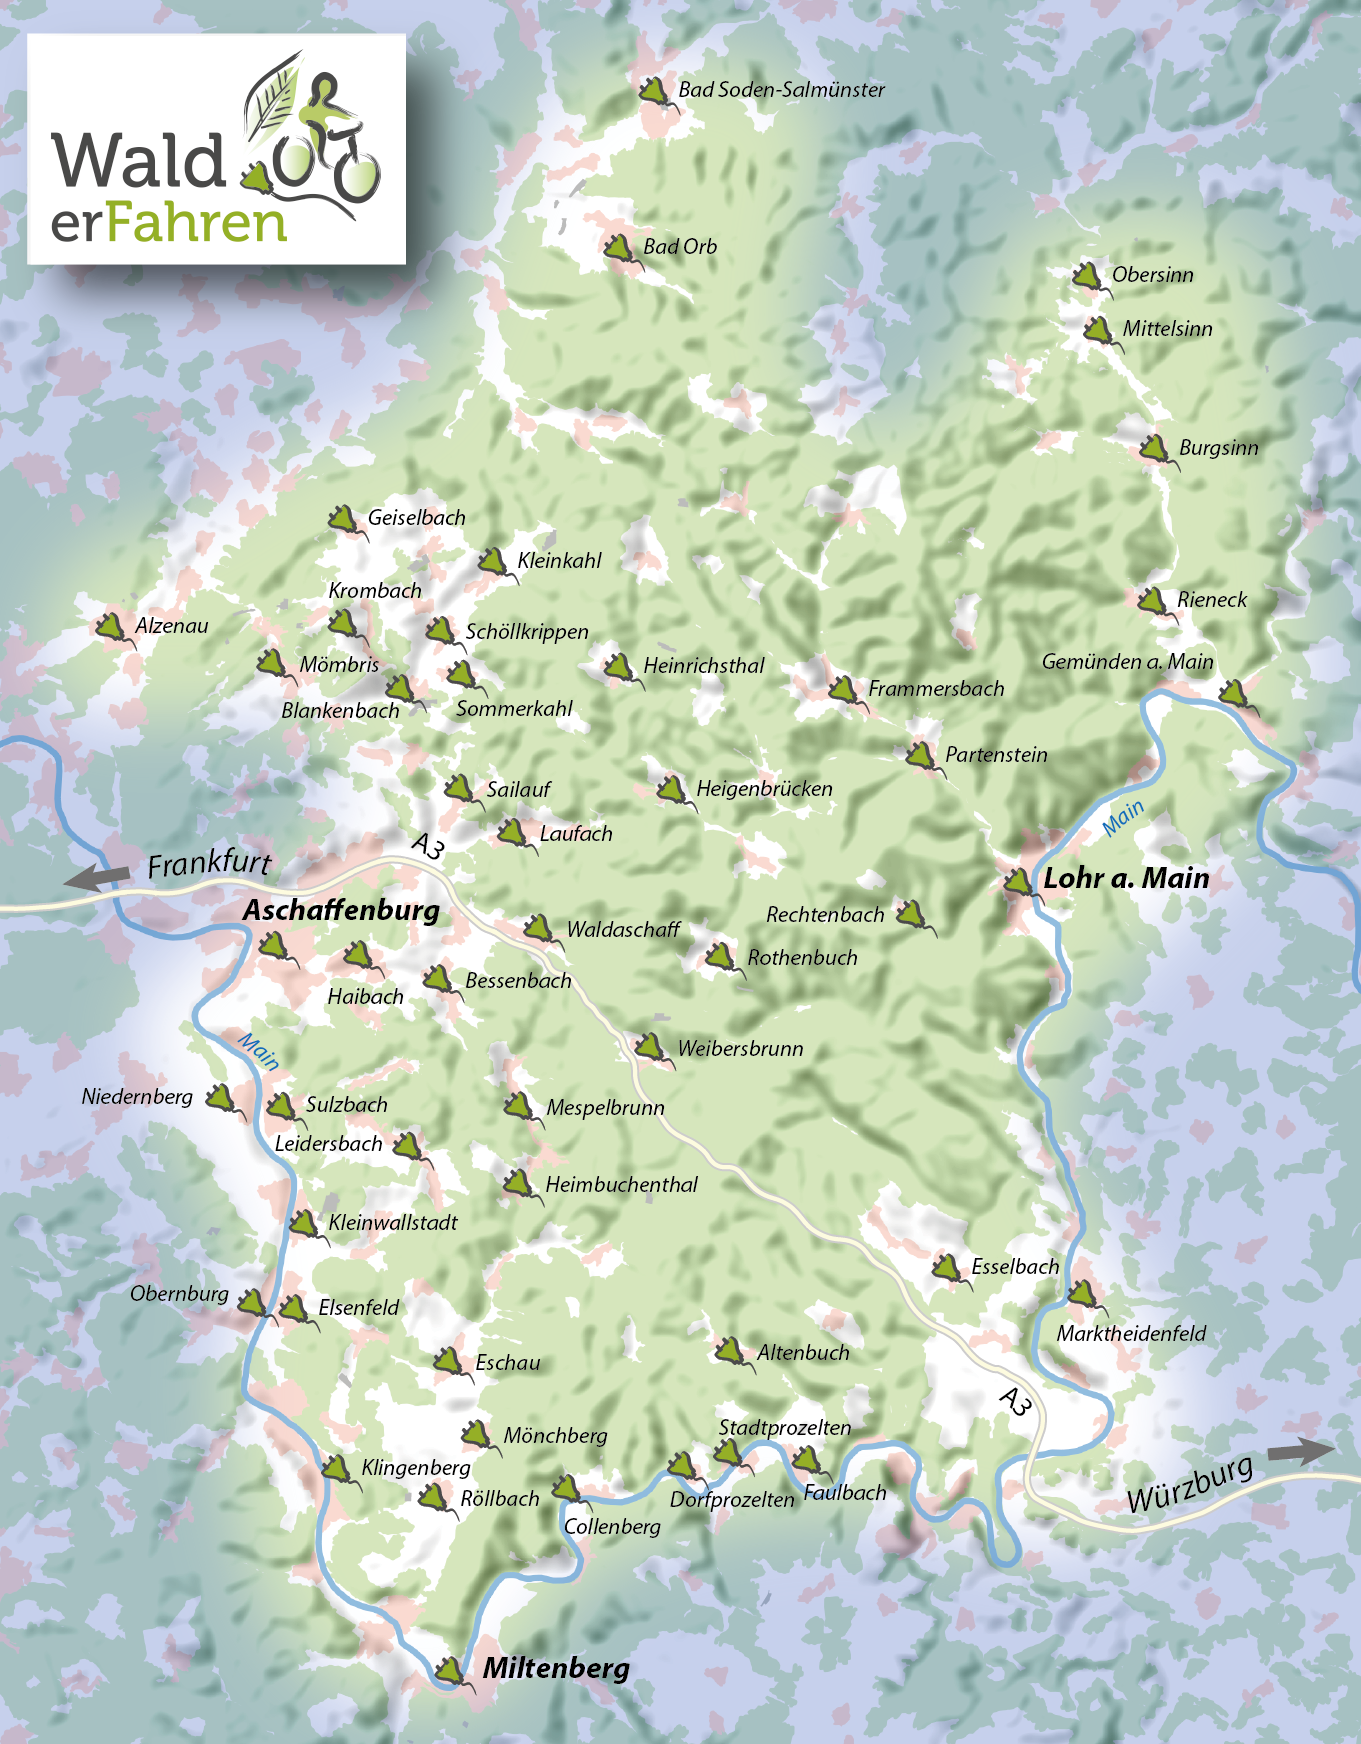 2020_02_18 Karte Walderfahren_Erweiterung5-01